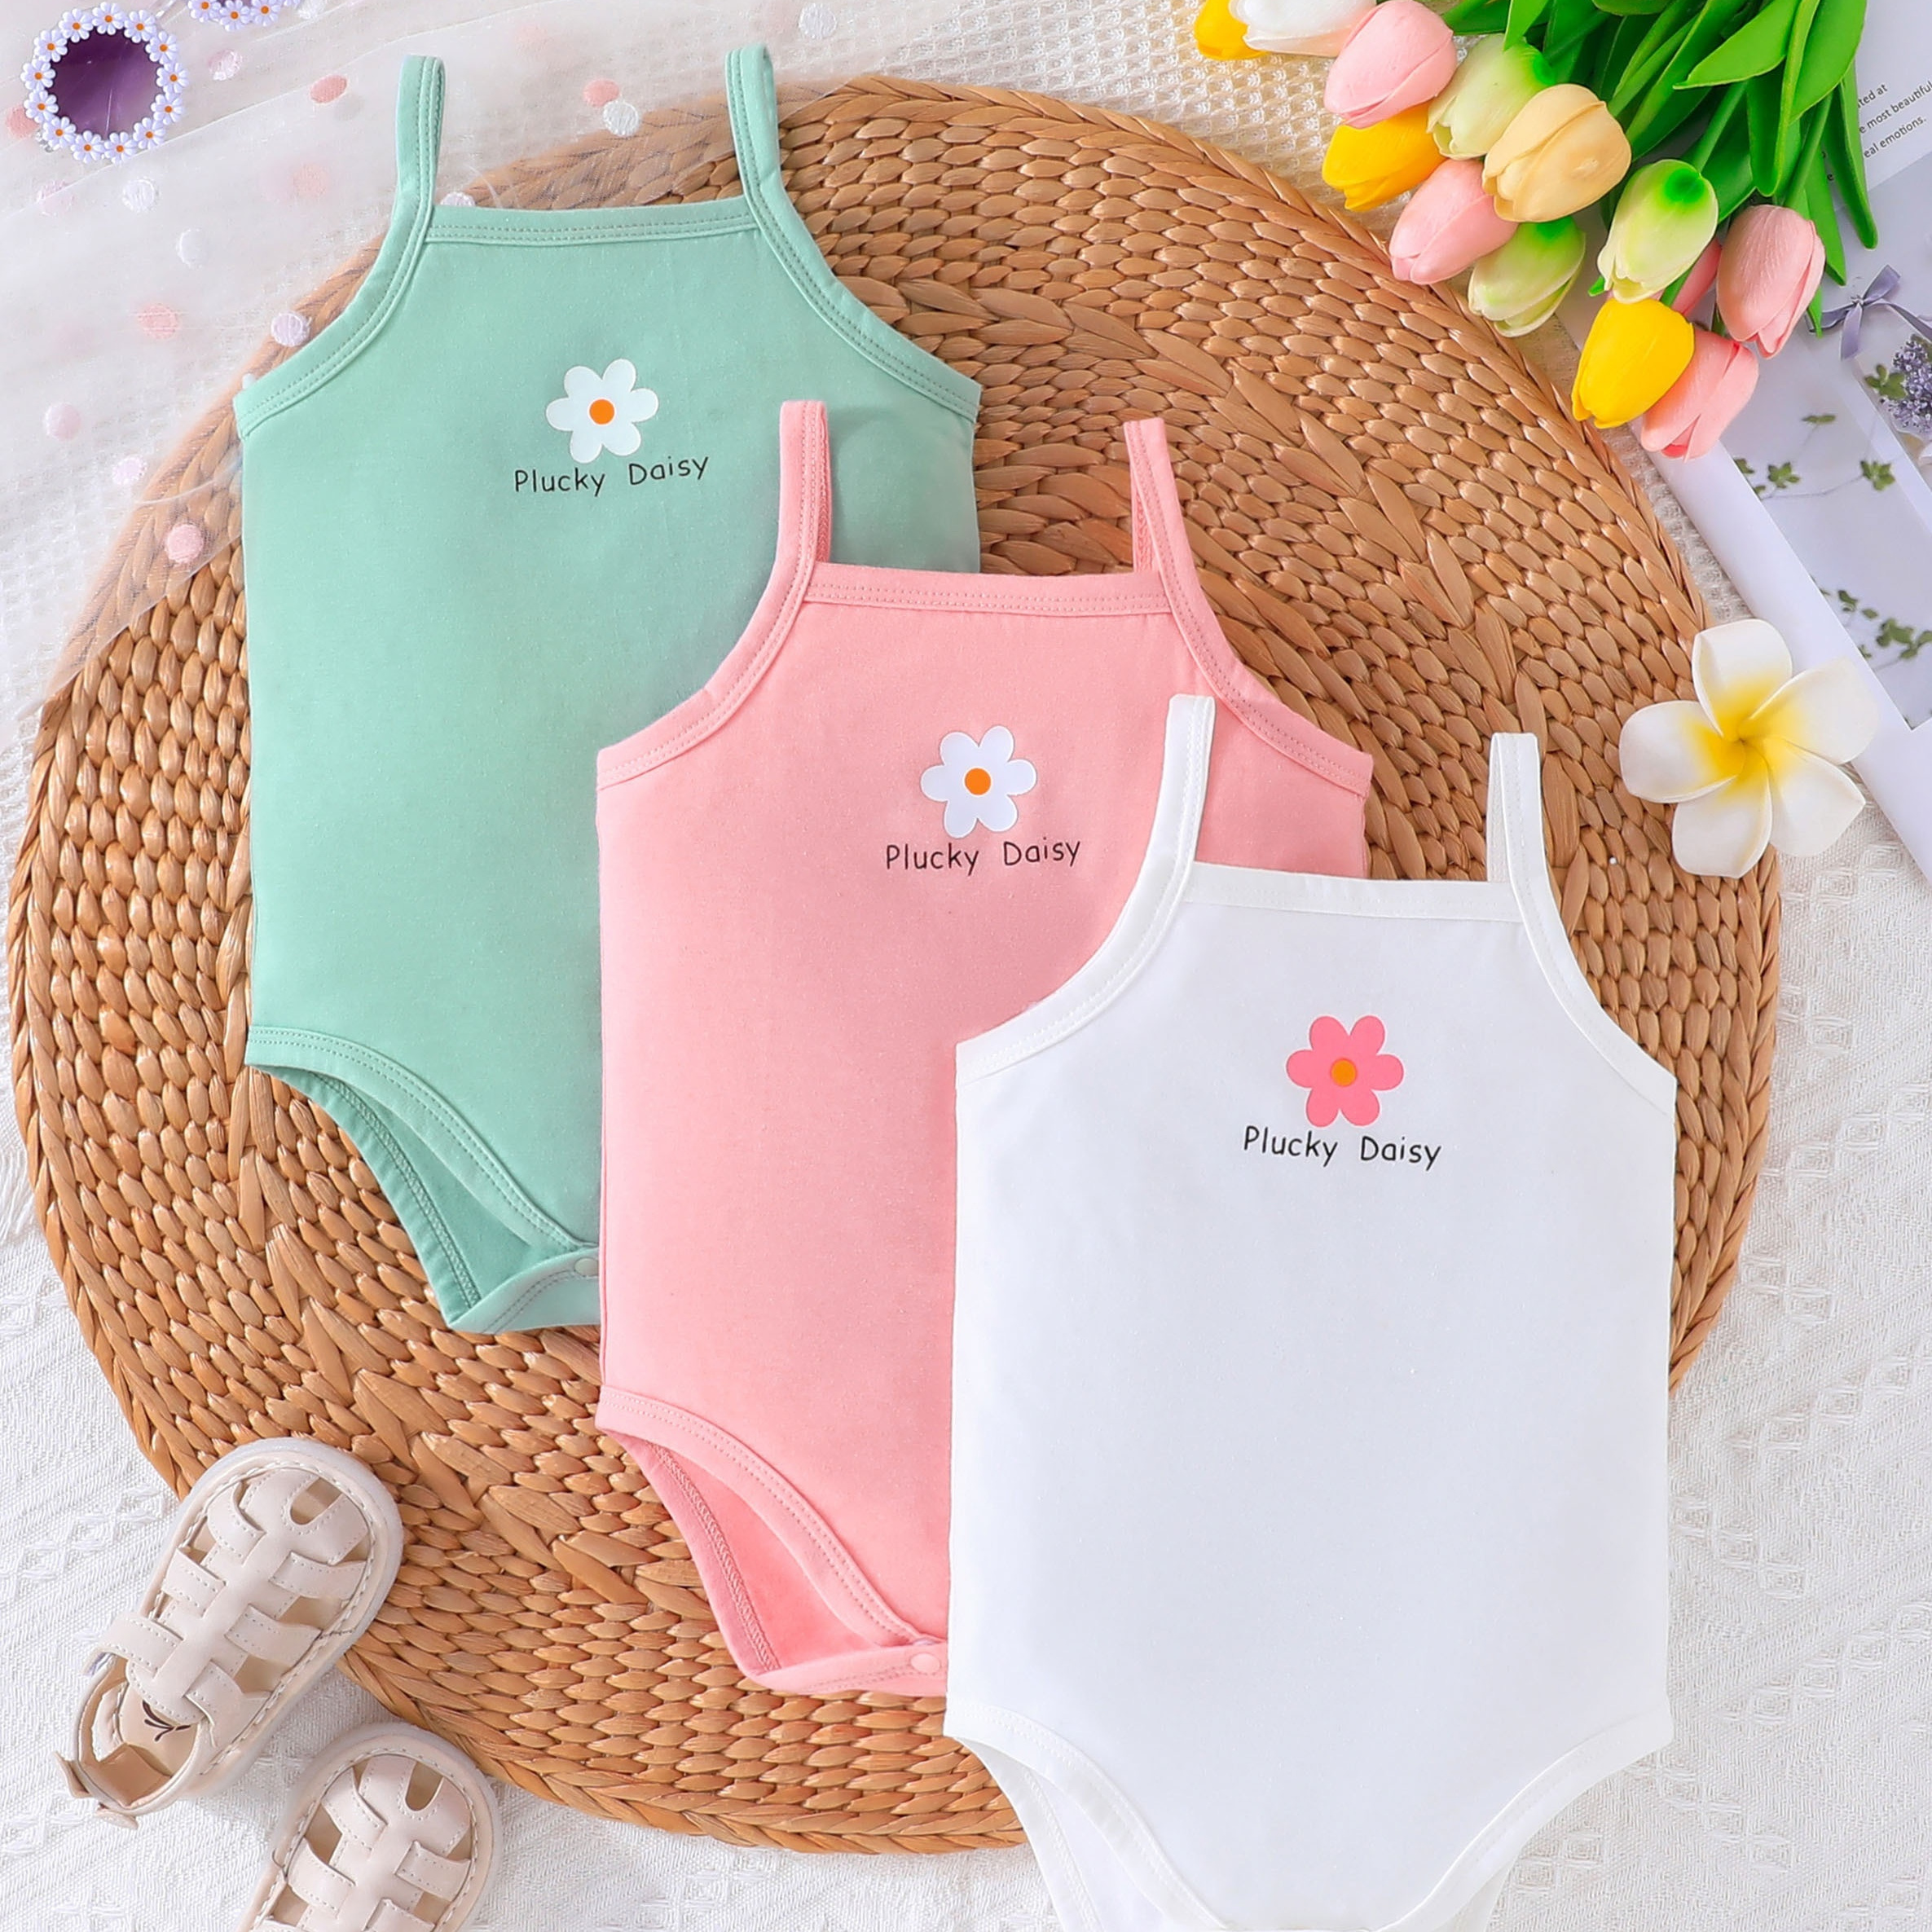 

3pcs Baby's Cartoon Flower Print Triangle Bodysuit, Casual Sleeveless Romper, Toddler & Infant Girl's Onesie For Summer, As Gift